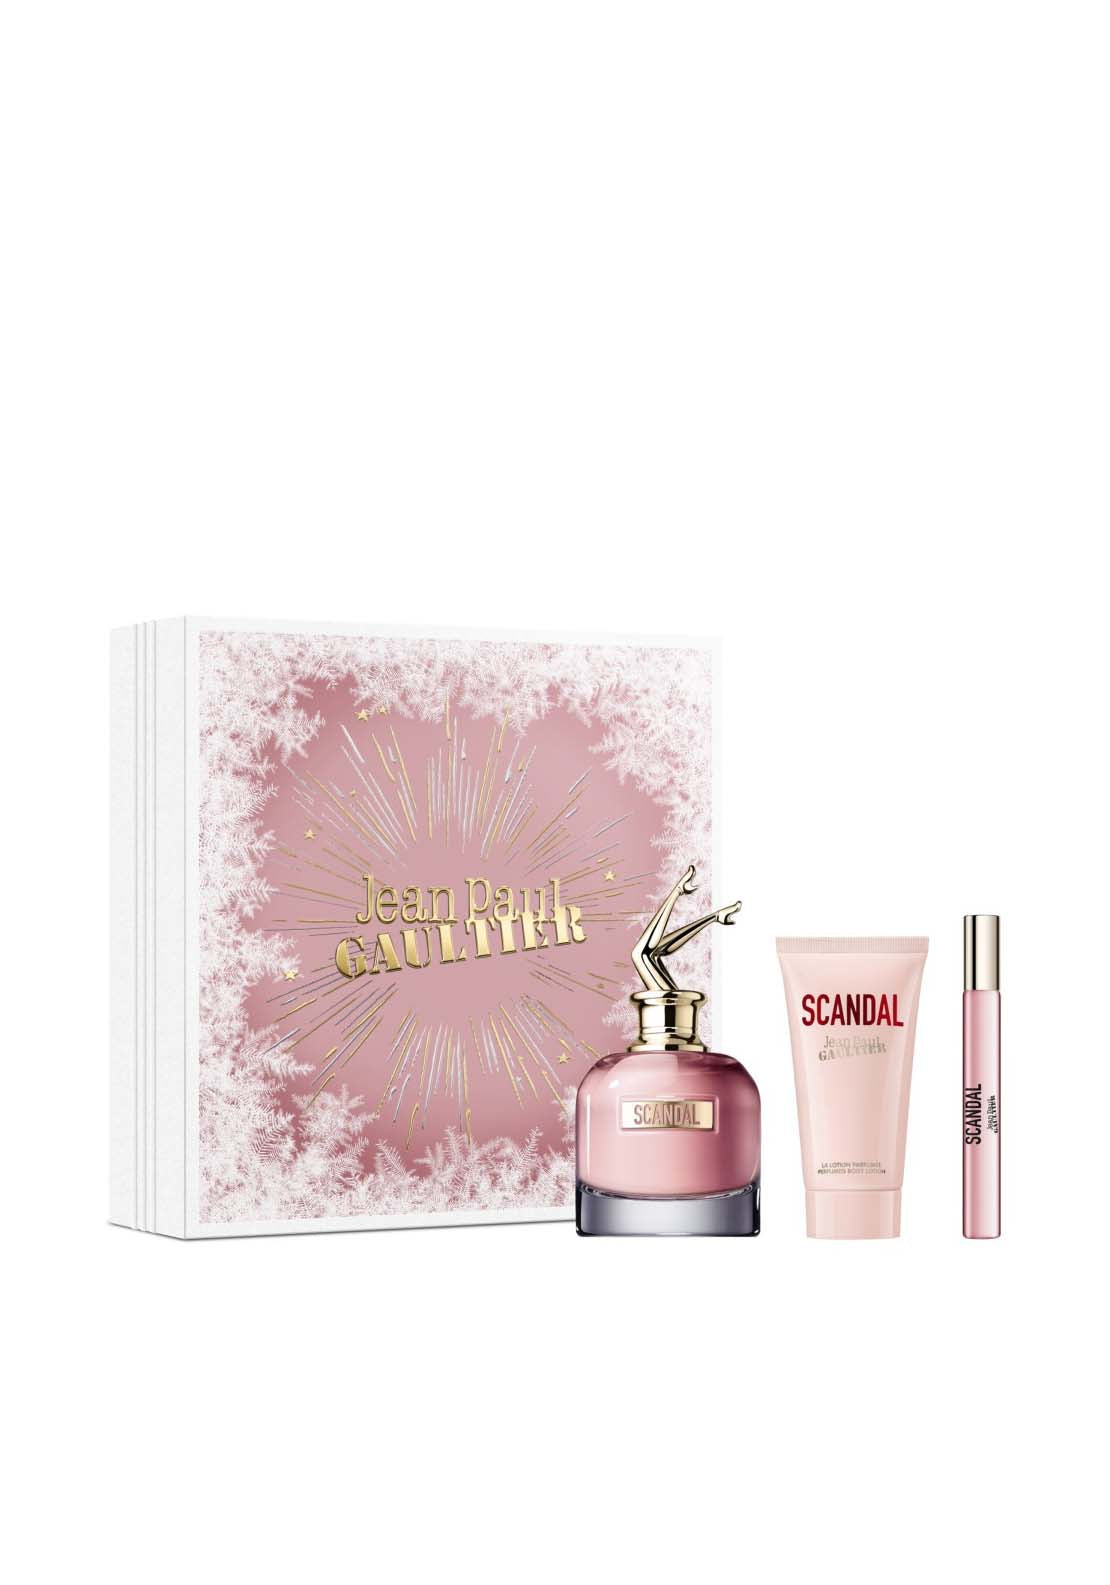 Jean Paul Gaultier Scandal Eau de Parfum 80ml 3 Piece Set 1 Shaws Department Stores